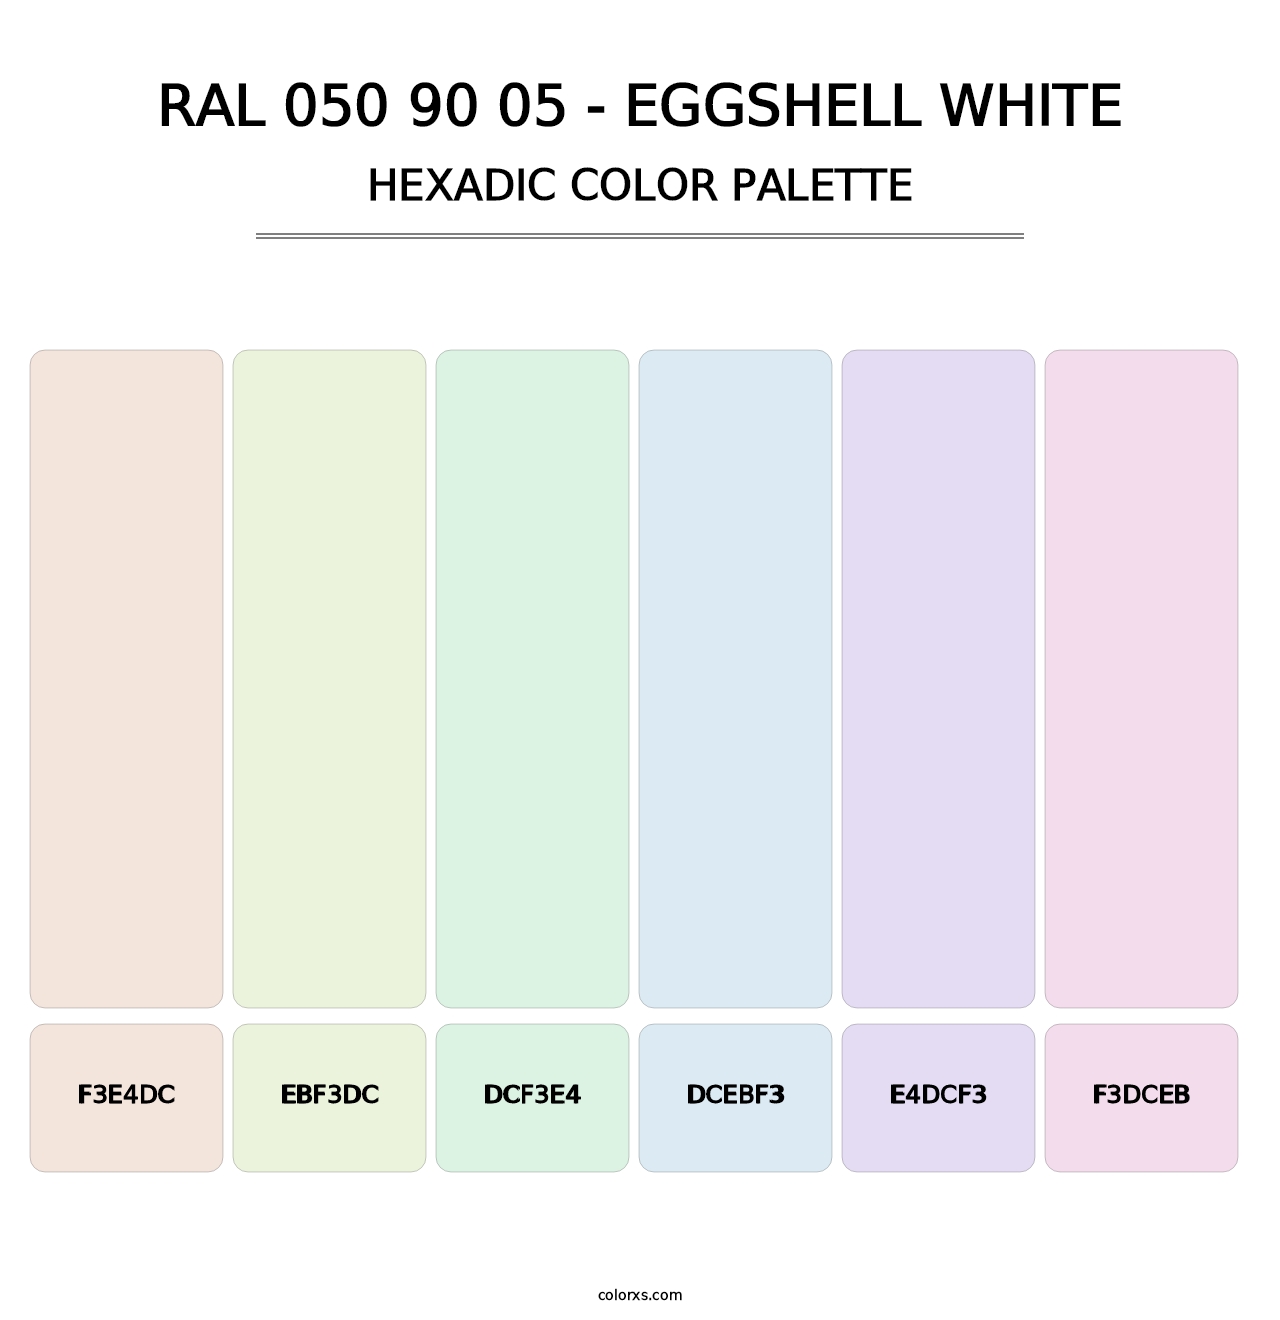 RAL 050 90 05 - Eggshell White - Hexadic Color Palette